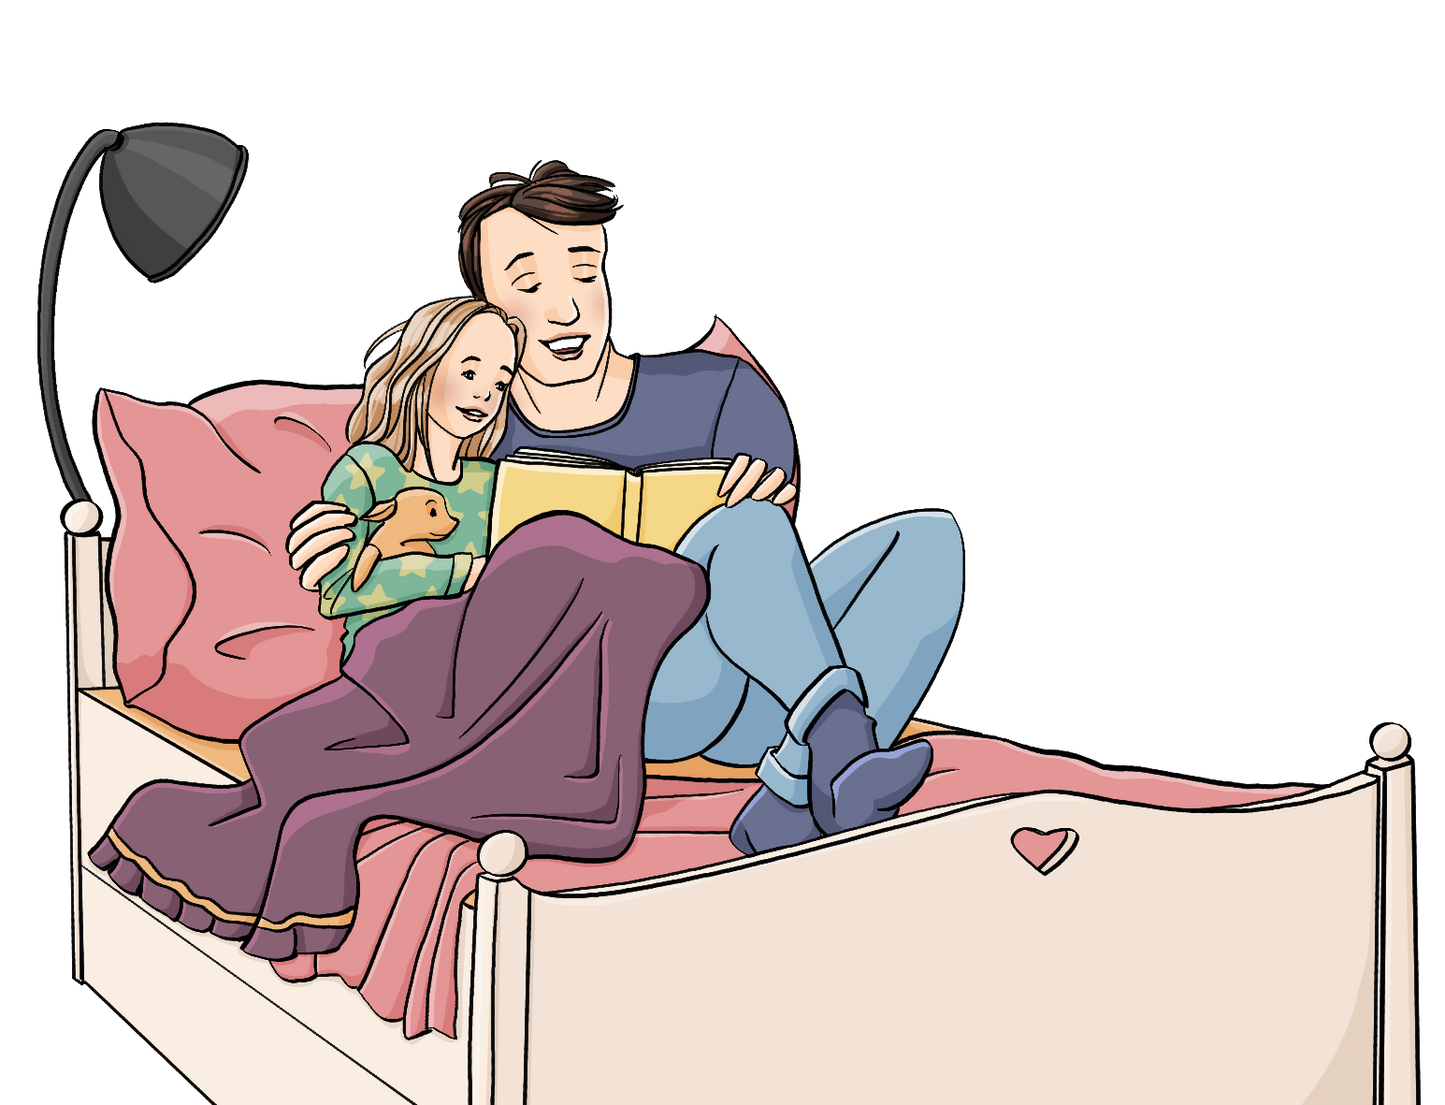 Alternativtext: Ein Mann und ein Mädchen im Schlafanzug sitzen auf einem Bett und schauen in ein Buch.